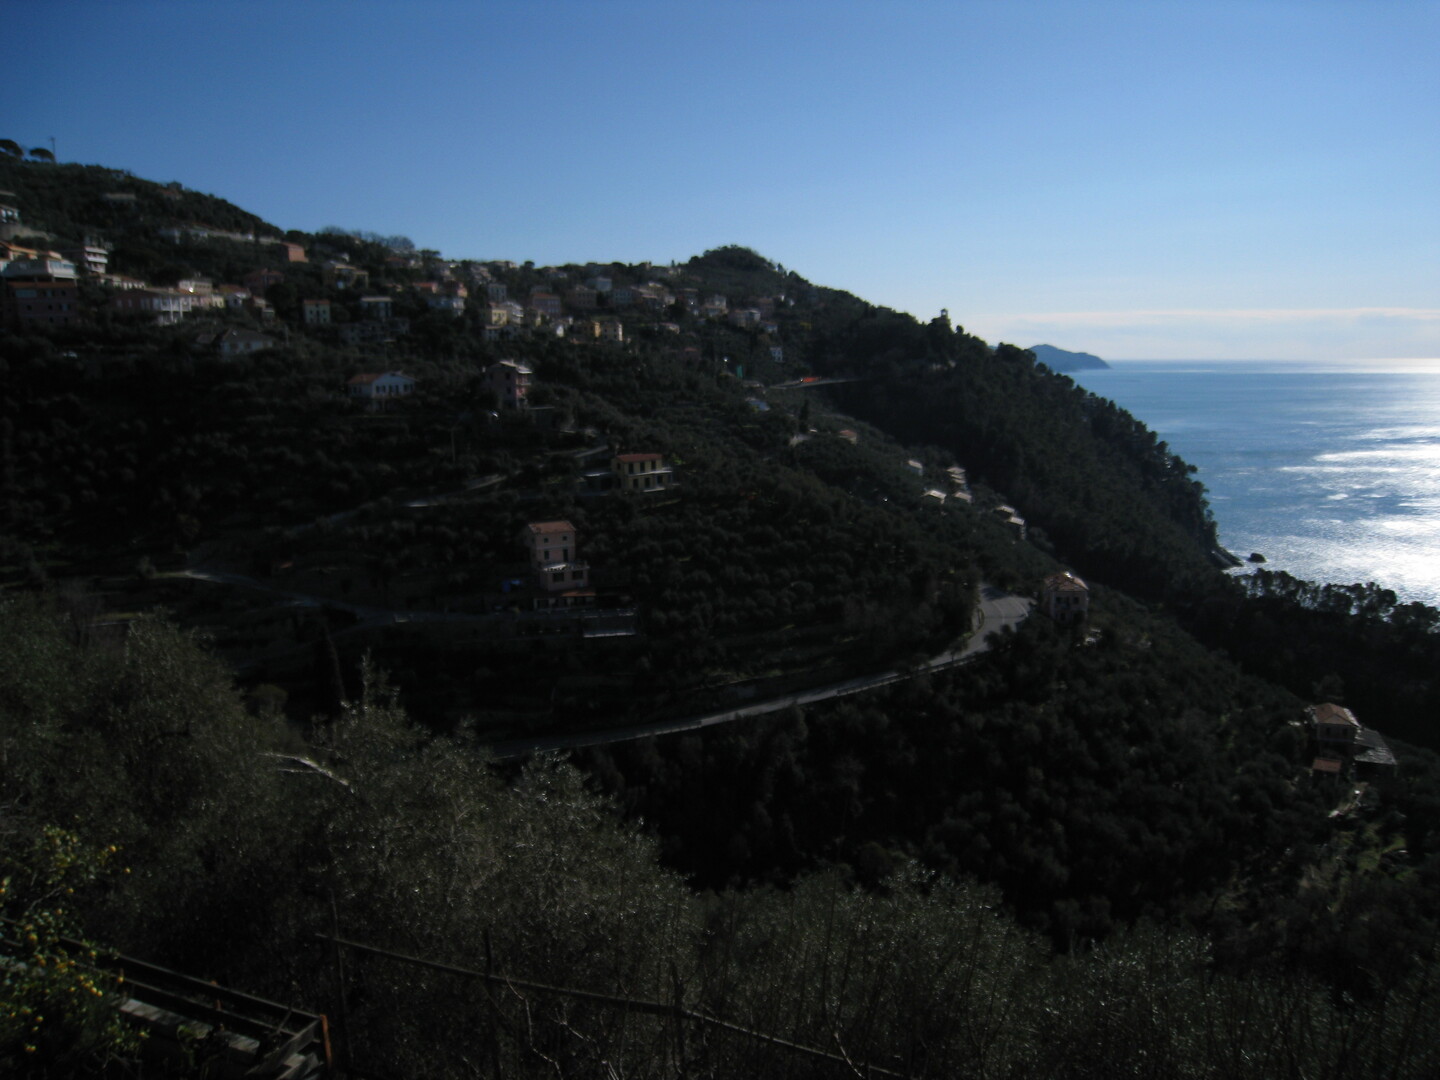 Blick auf die Via Aurelia bei Zoagli.
(Februar 2009)